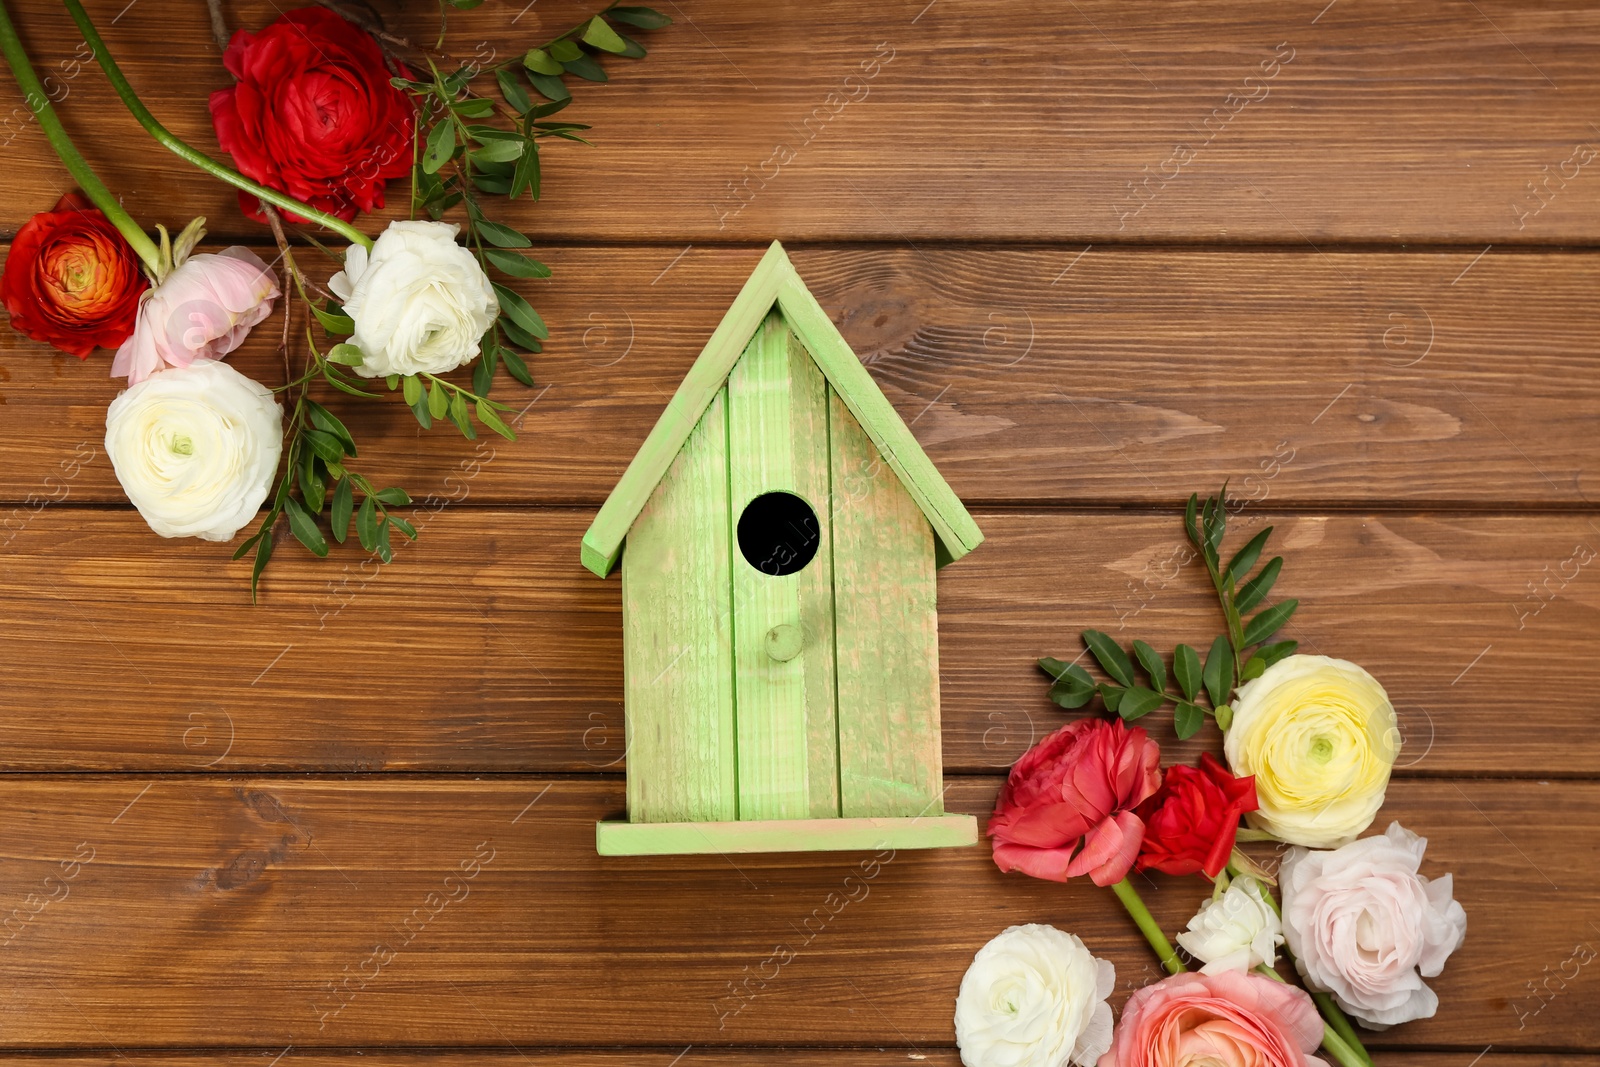 Photo of Stylish bird house and fresh eustomas on wooden background, flat lay